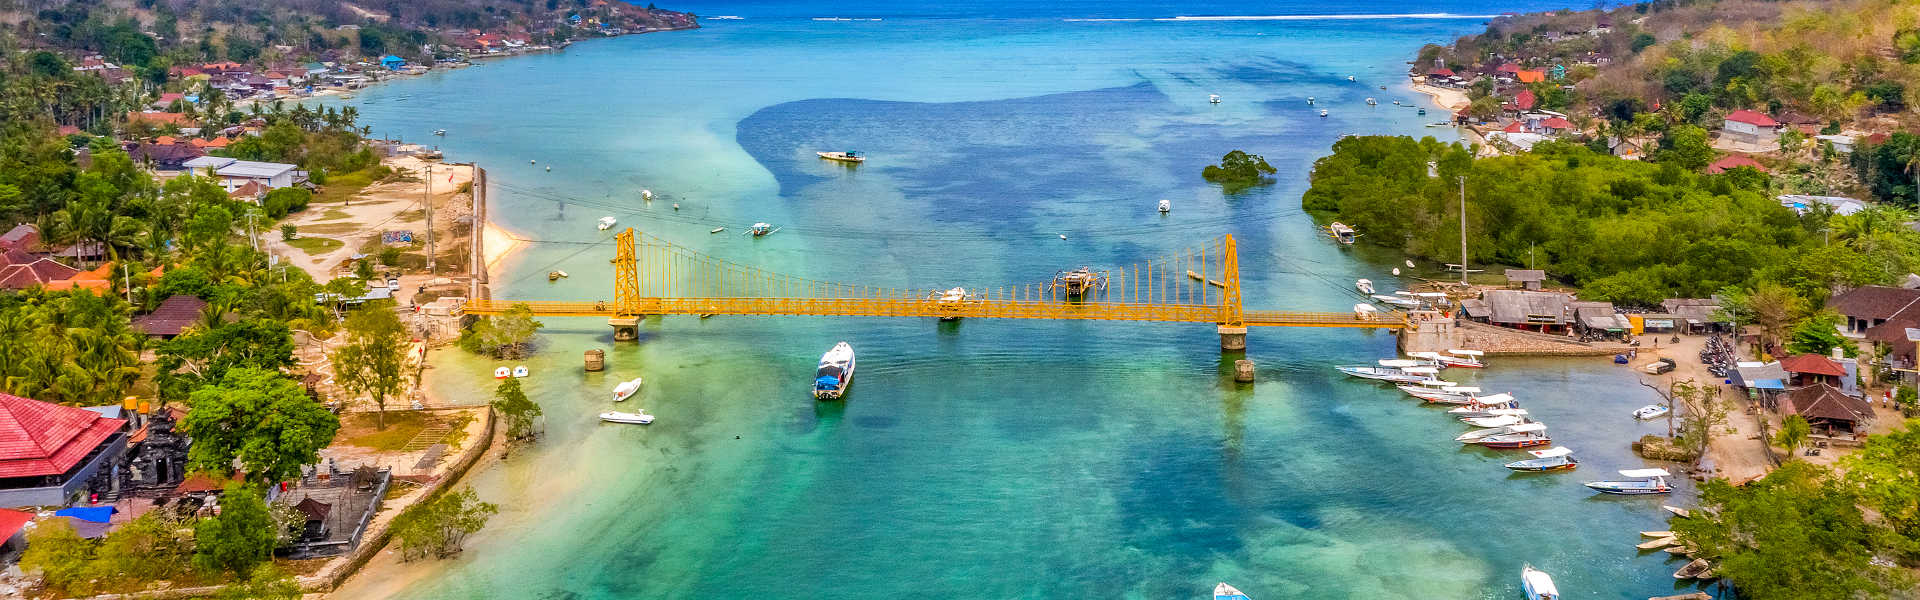 Мост между островами Нуса Лембонган и Нуса Ченинган